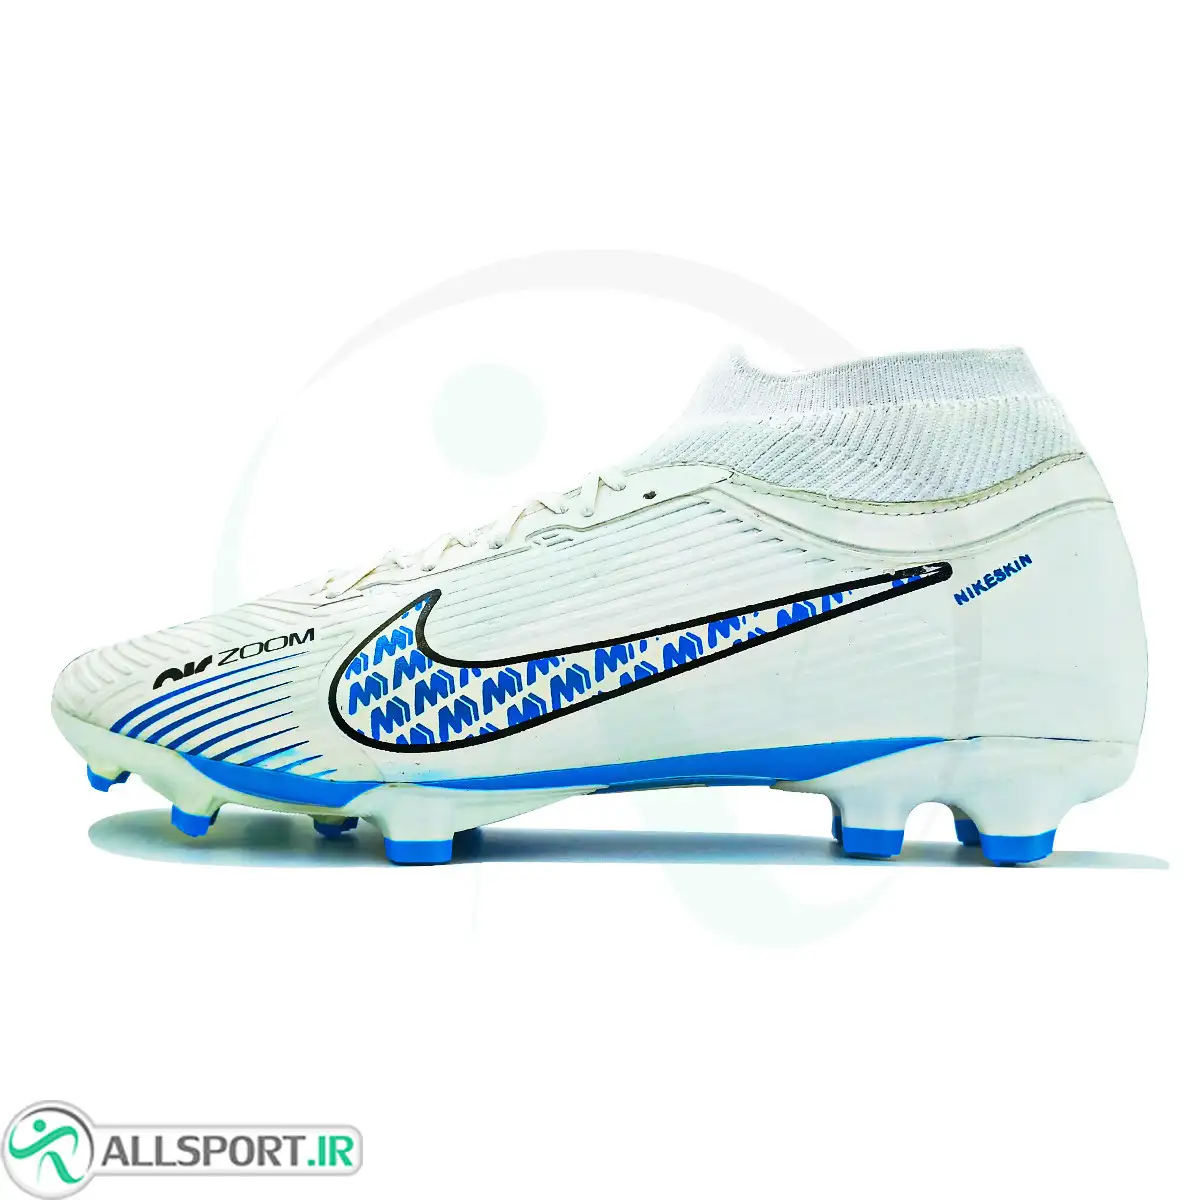 کفش فوتبال نایک ایر زوم مرکوریال  Nike Air Zoom Mercurial White Blue 12154570